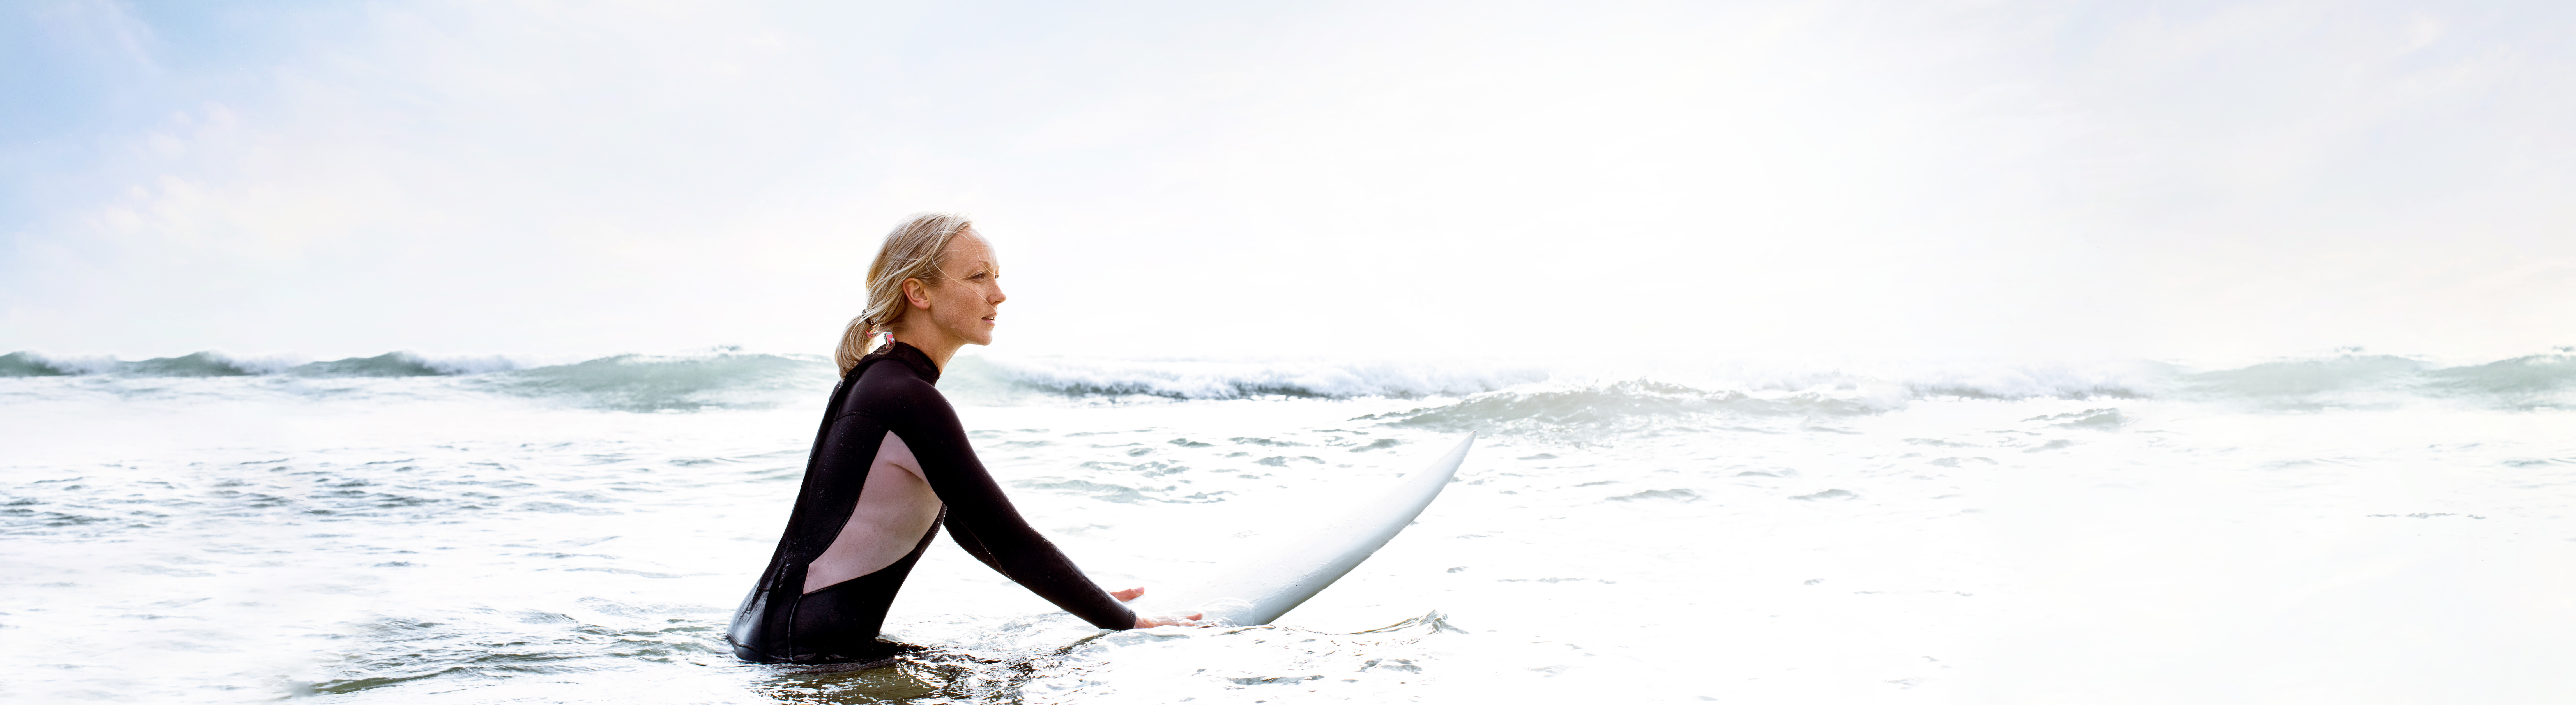 Frau im Surfanzug und Surfboard im Wasser: Erlebe den Flow: Dein Weg. Deine Zukunft. Dein LTS.